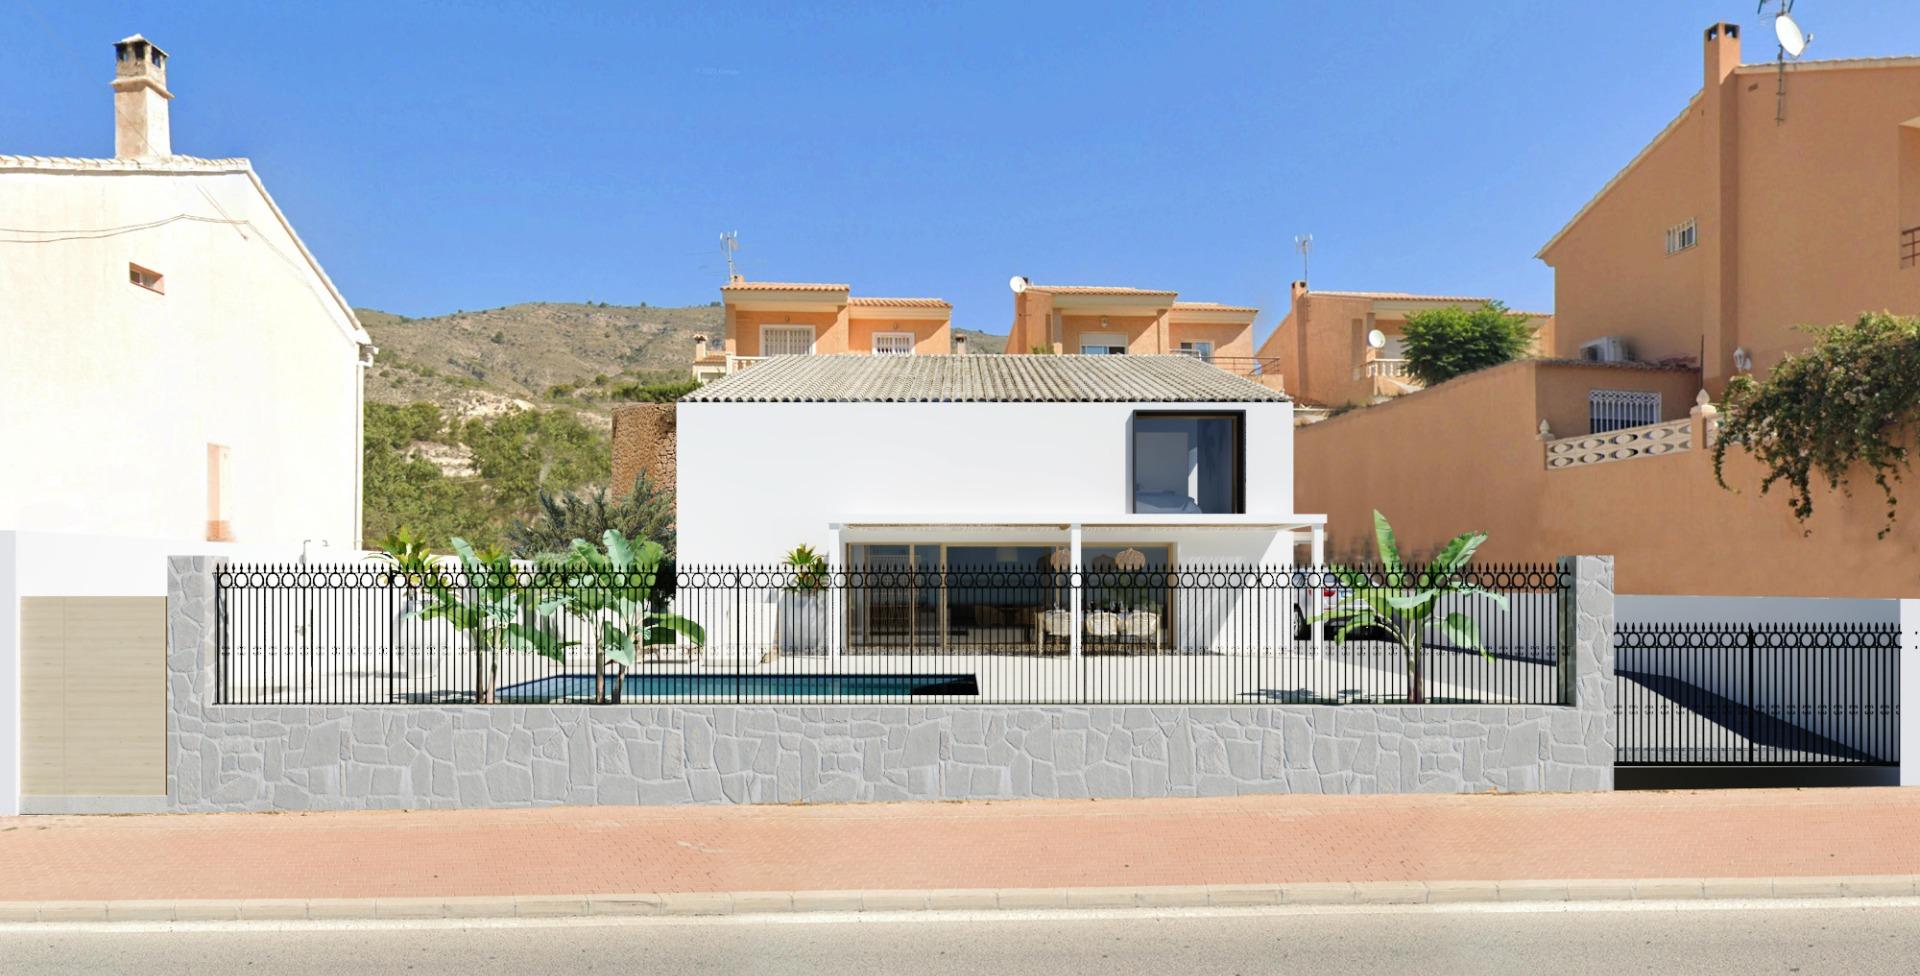 Nieuwbouwvilla 4 slaapkamers, zwembad in Orxeta (Alicante)